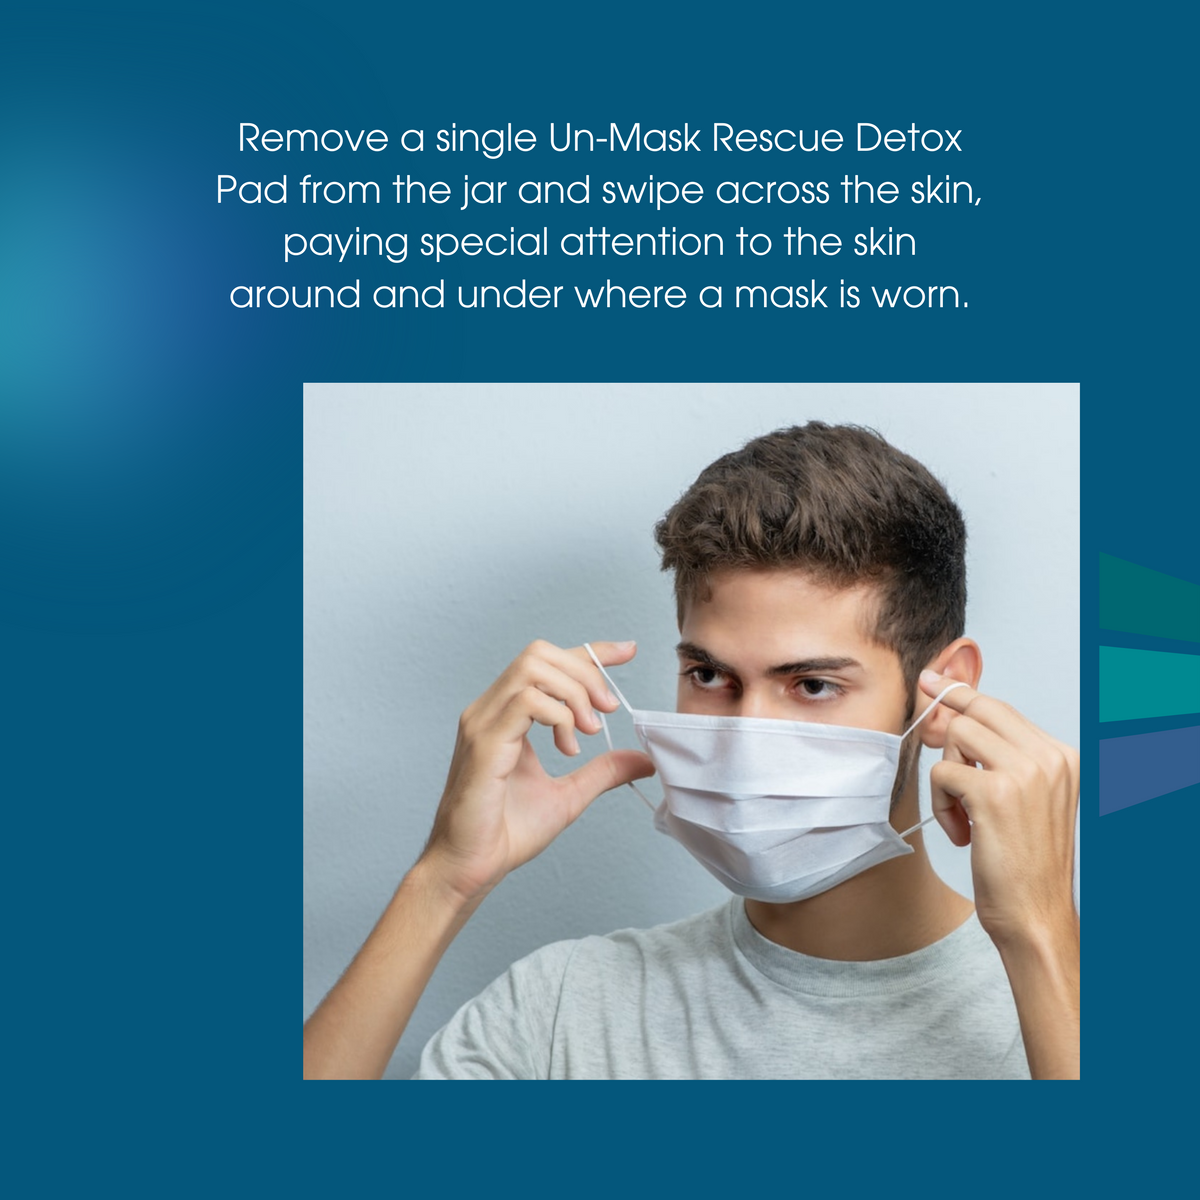 Un-Mask Rescue Detox Cleansing Pads